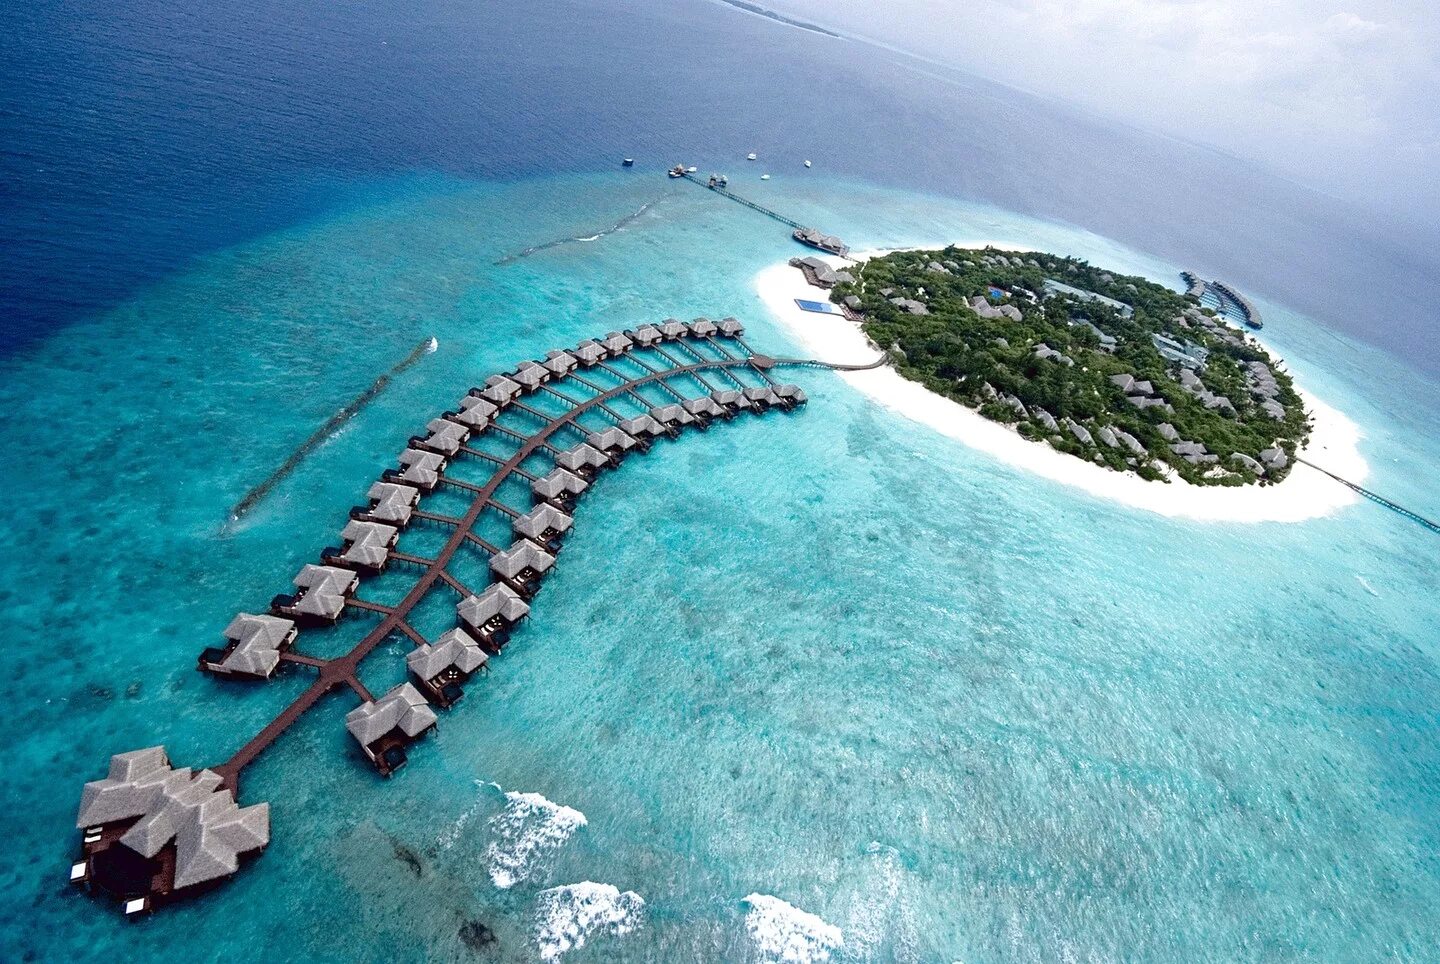 Неизведанные страны. Хаа Алифу Атолл Мальдивы. Мальдивы Гаафу-Дхаалу. Остров Ган Мальдивы. Аэропорт gan Мальдивы.